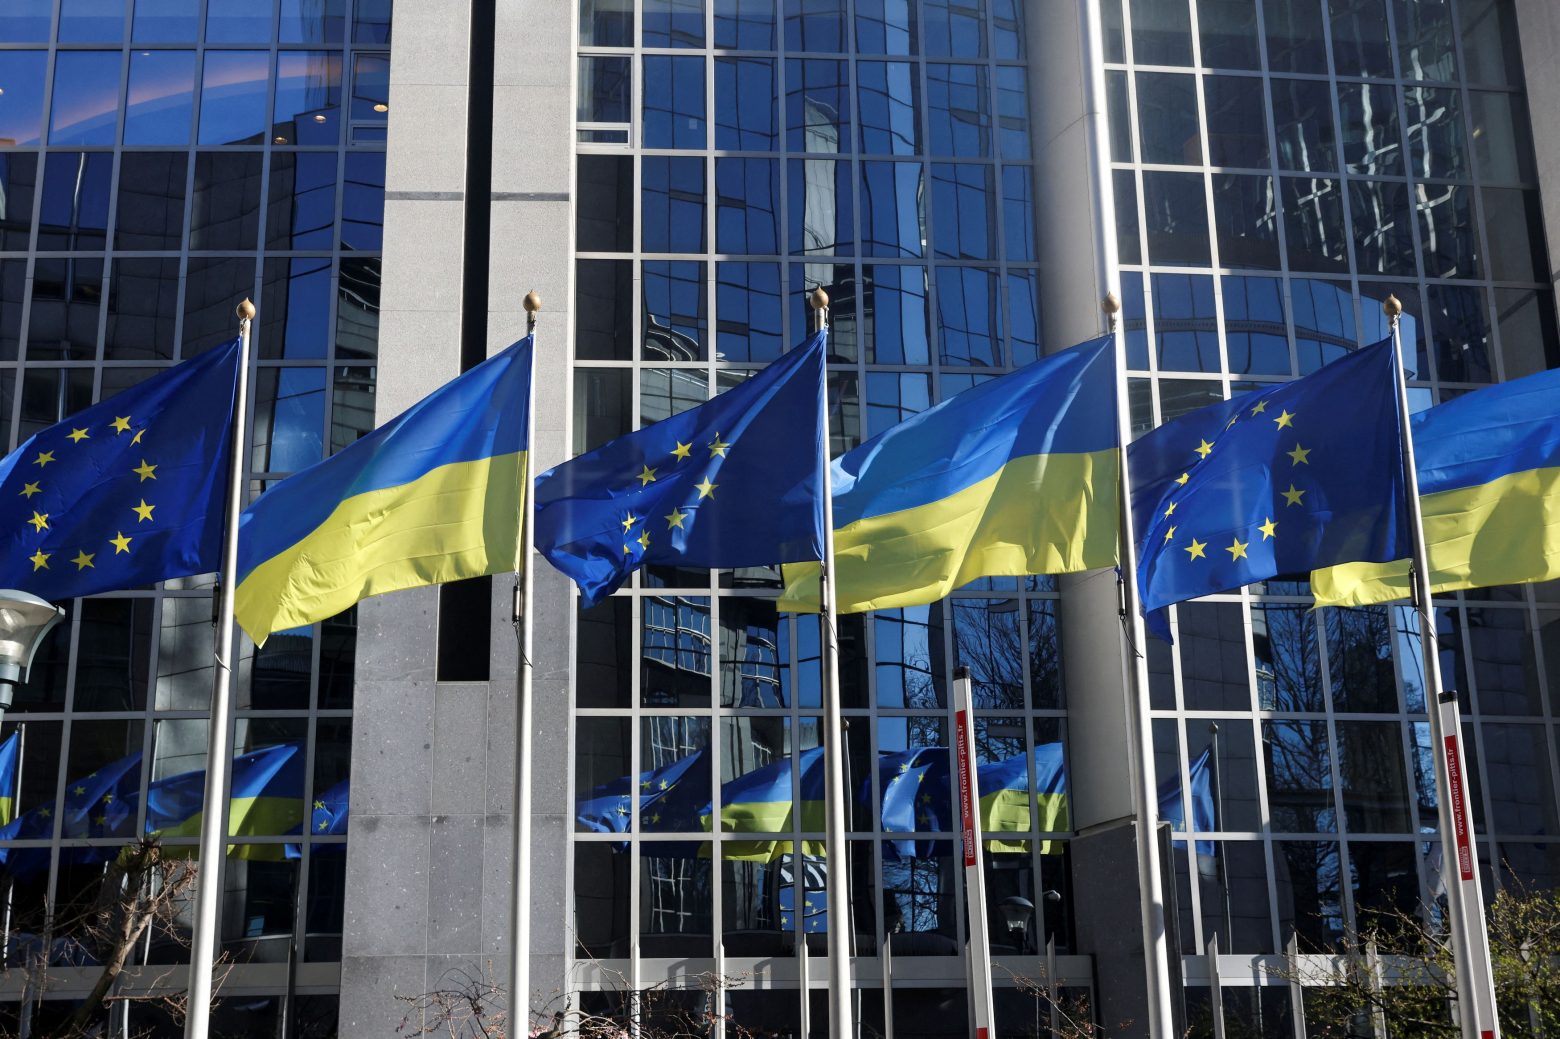 Πόλεμος στην Ουκρανία: Απειλή για τη Δημοκρατία στην Ευρώπη οι ξένες παρεμβάσεις σύμφωνα με το Ευρωκοινοβούλιο